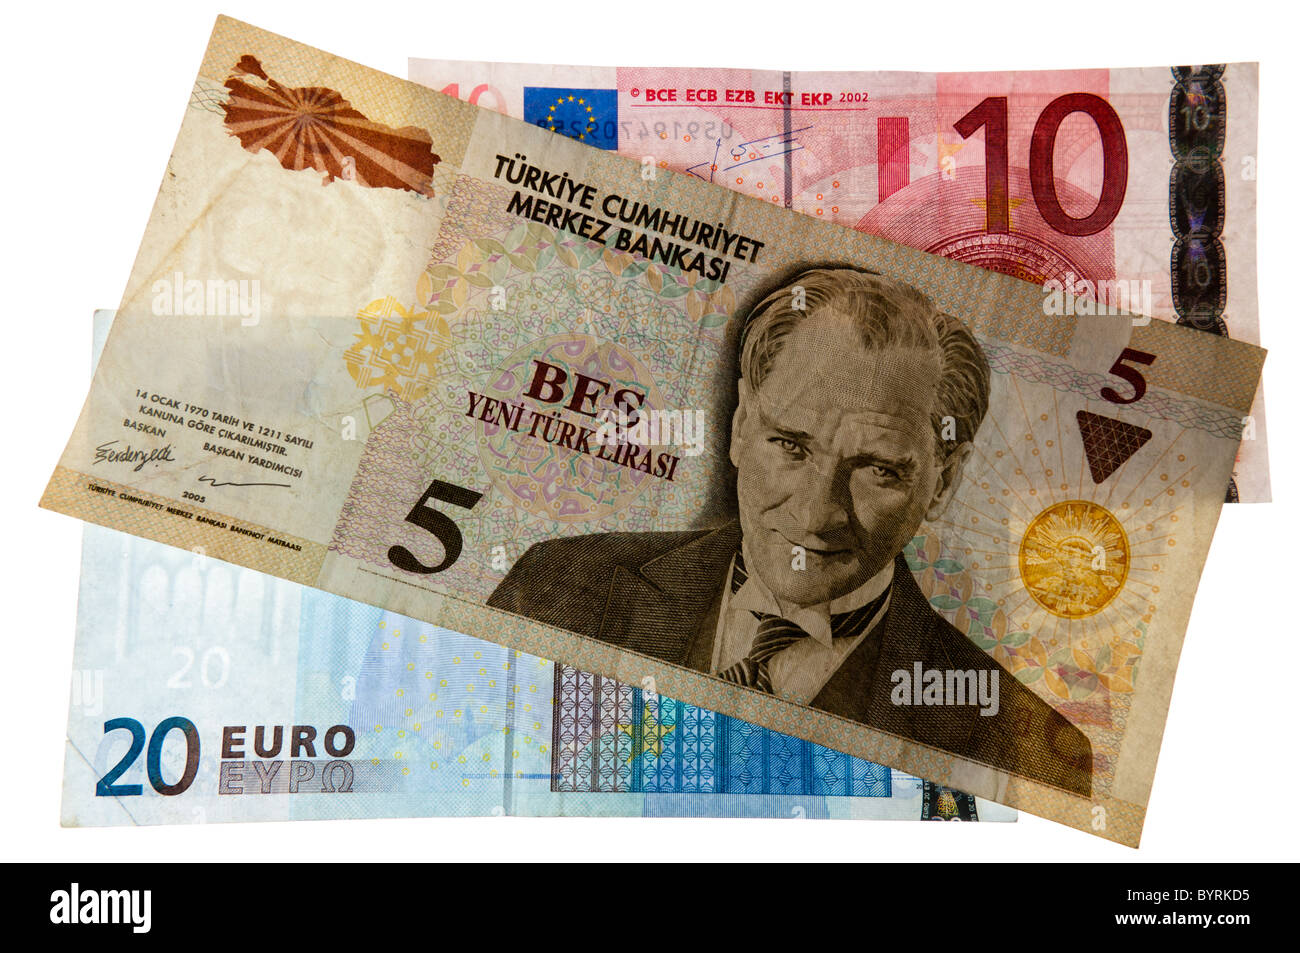 Turkish exchange rate Banque d'images détourées - Alamy